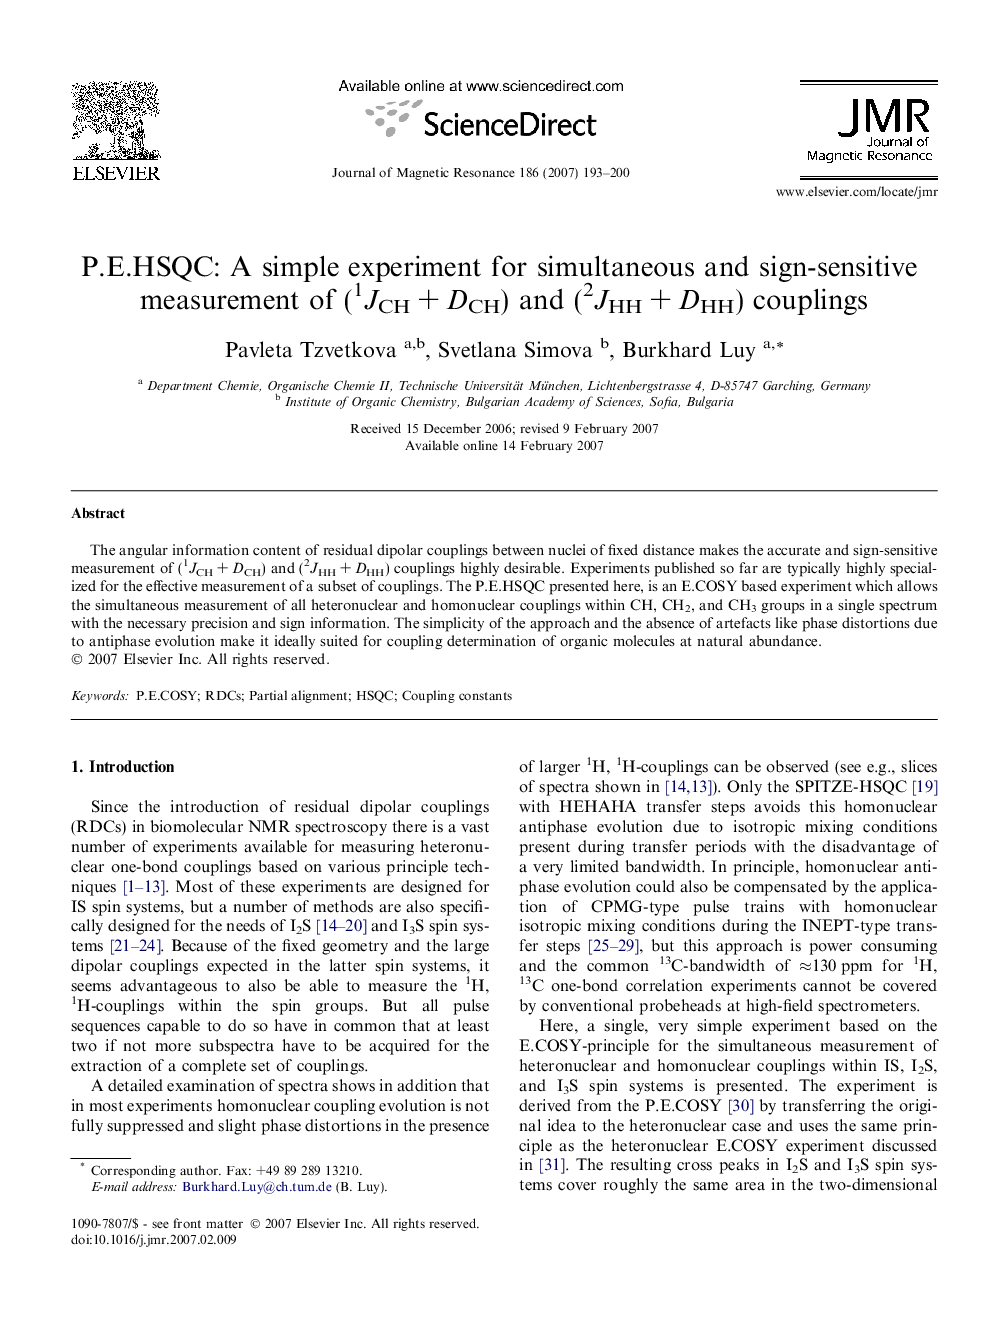 P.E.HSQC: A simple experiment for simultaneous and sign-sensitive measurement of (1JCHÂ +Â DCH) and (2JHHÂ +Â DHH) couplings